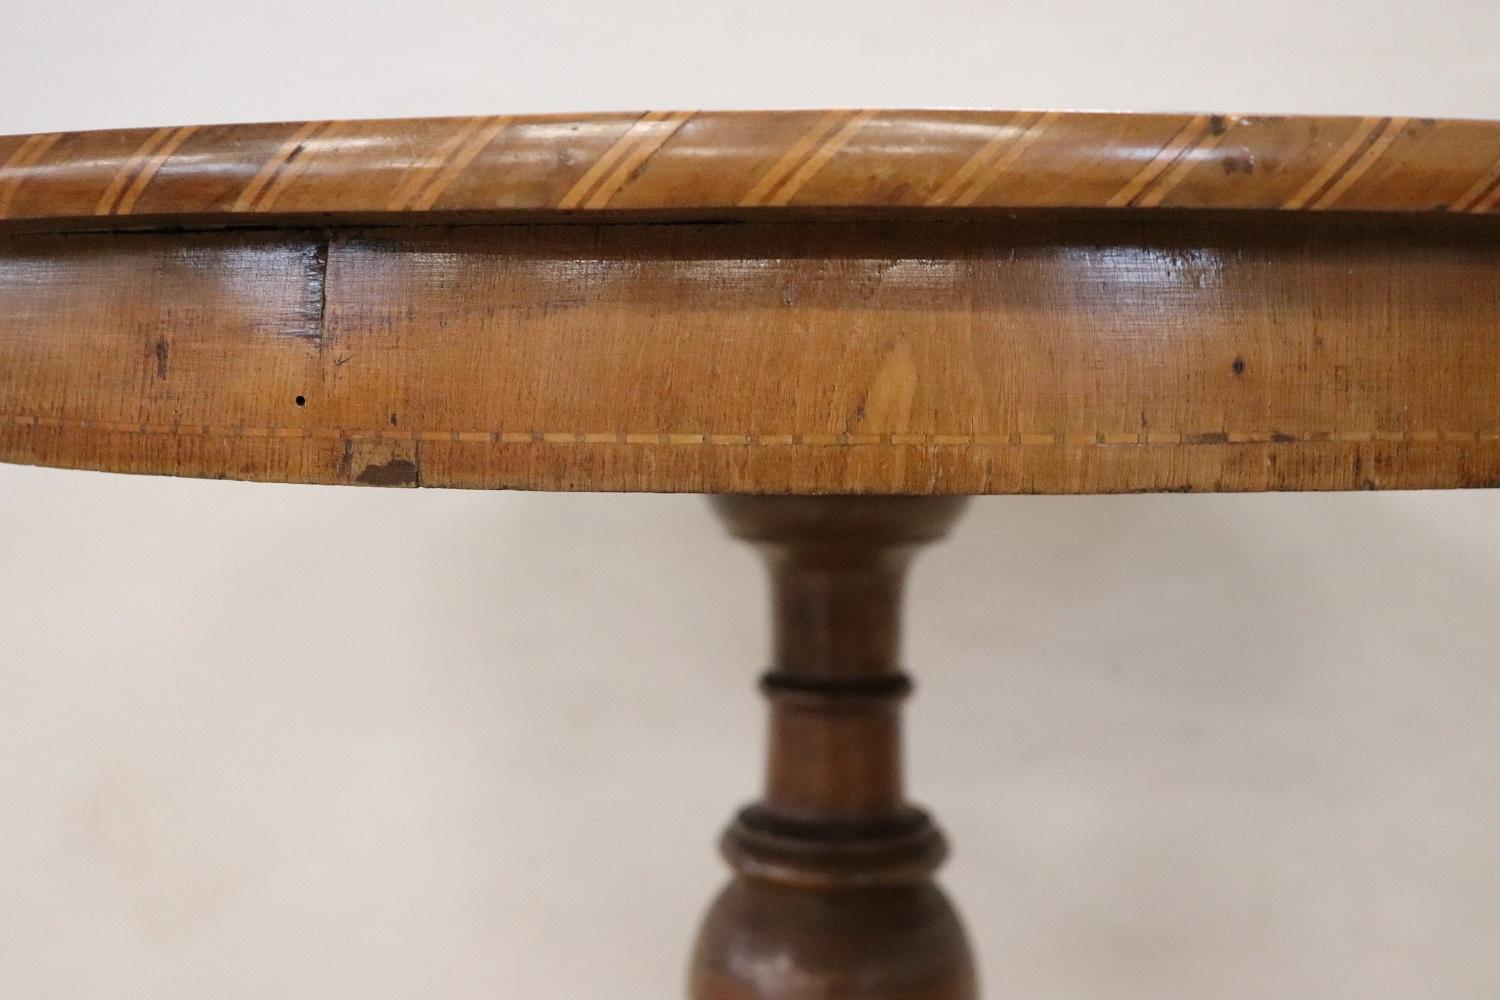 Belle et importante table centrale ronde ancienne Louis Philippe, années 1845. La grande et solide tige centrale est en noyer tourné. Le plateau en marqueterie de noyer est d'une grande valeur. La table est caractérisée par un décor marqueté raffiné